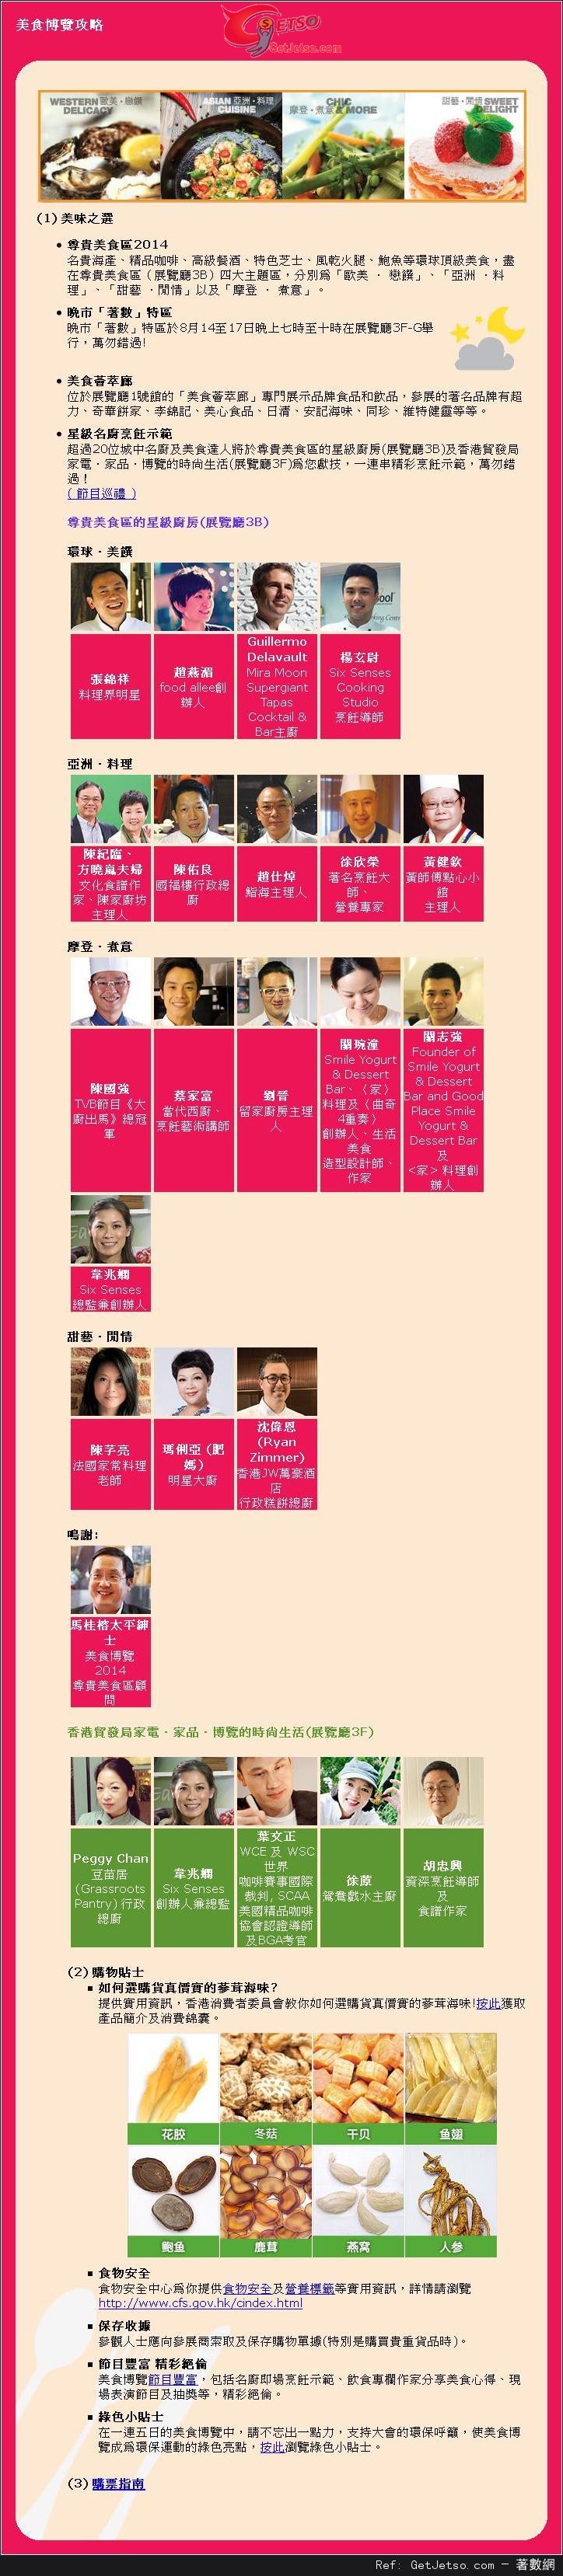 香港貿發局美食博覽2014攻略及購票指南(14年8月14-18日)圖片2